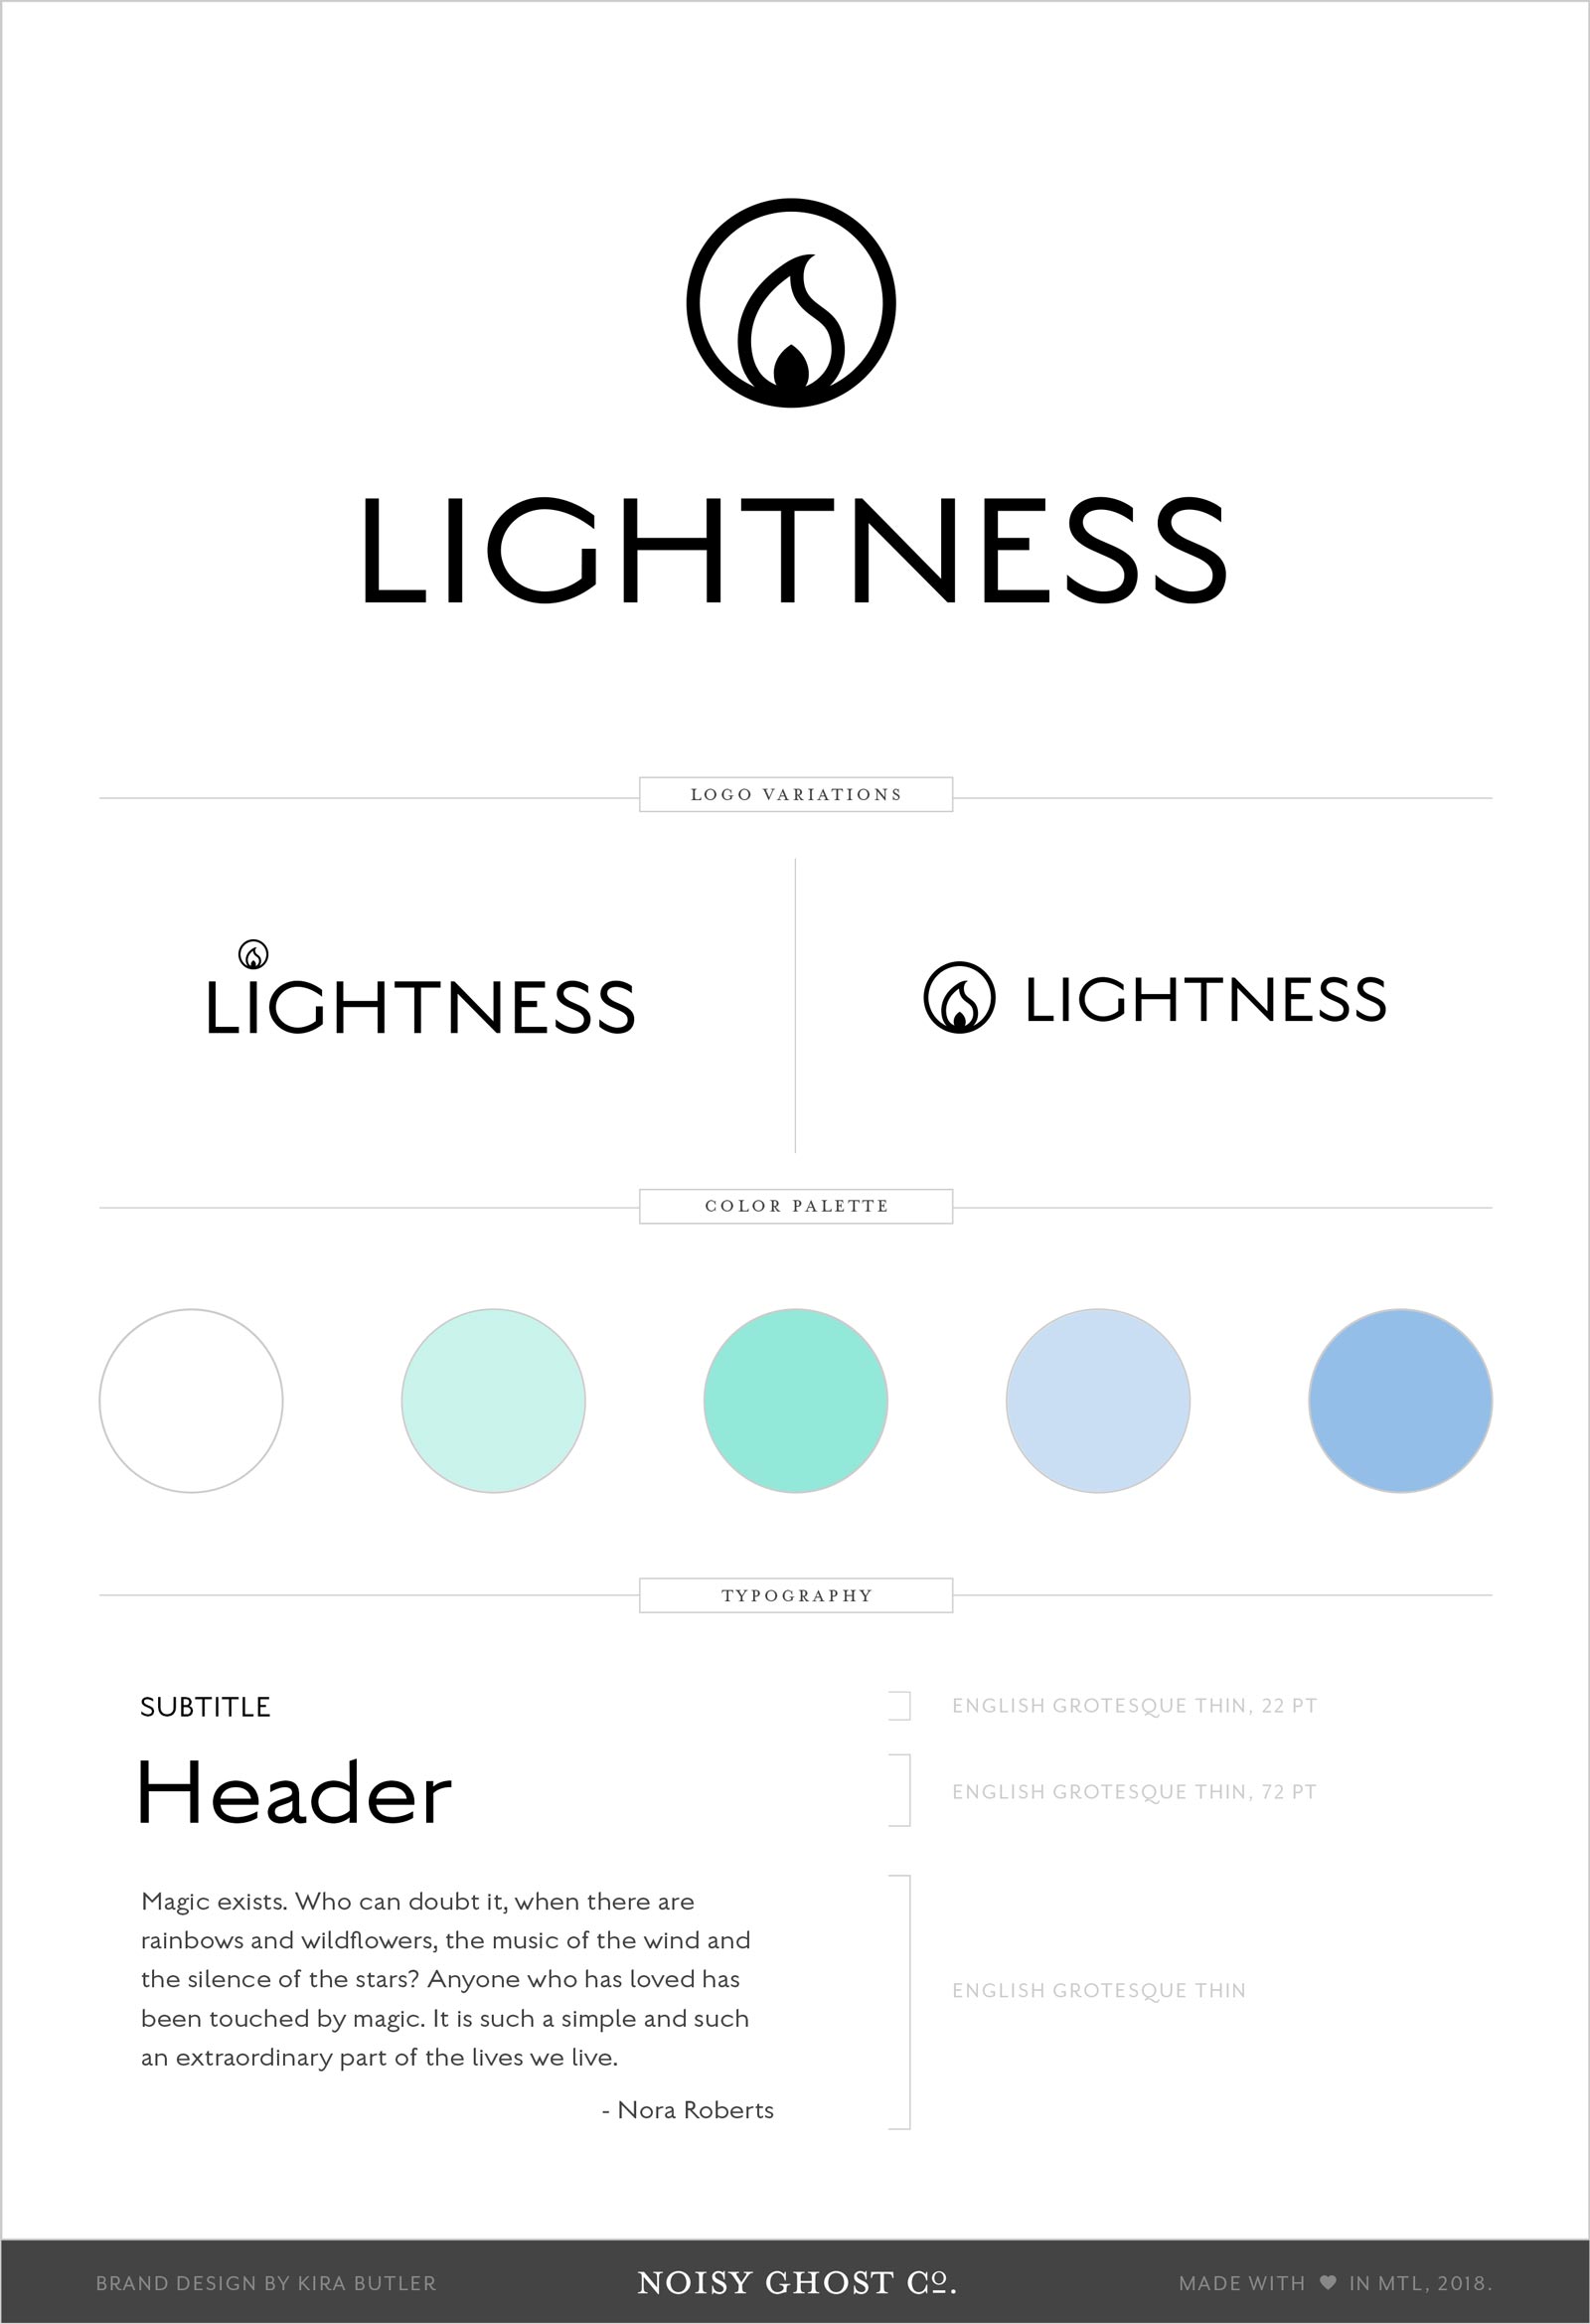 Lightness